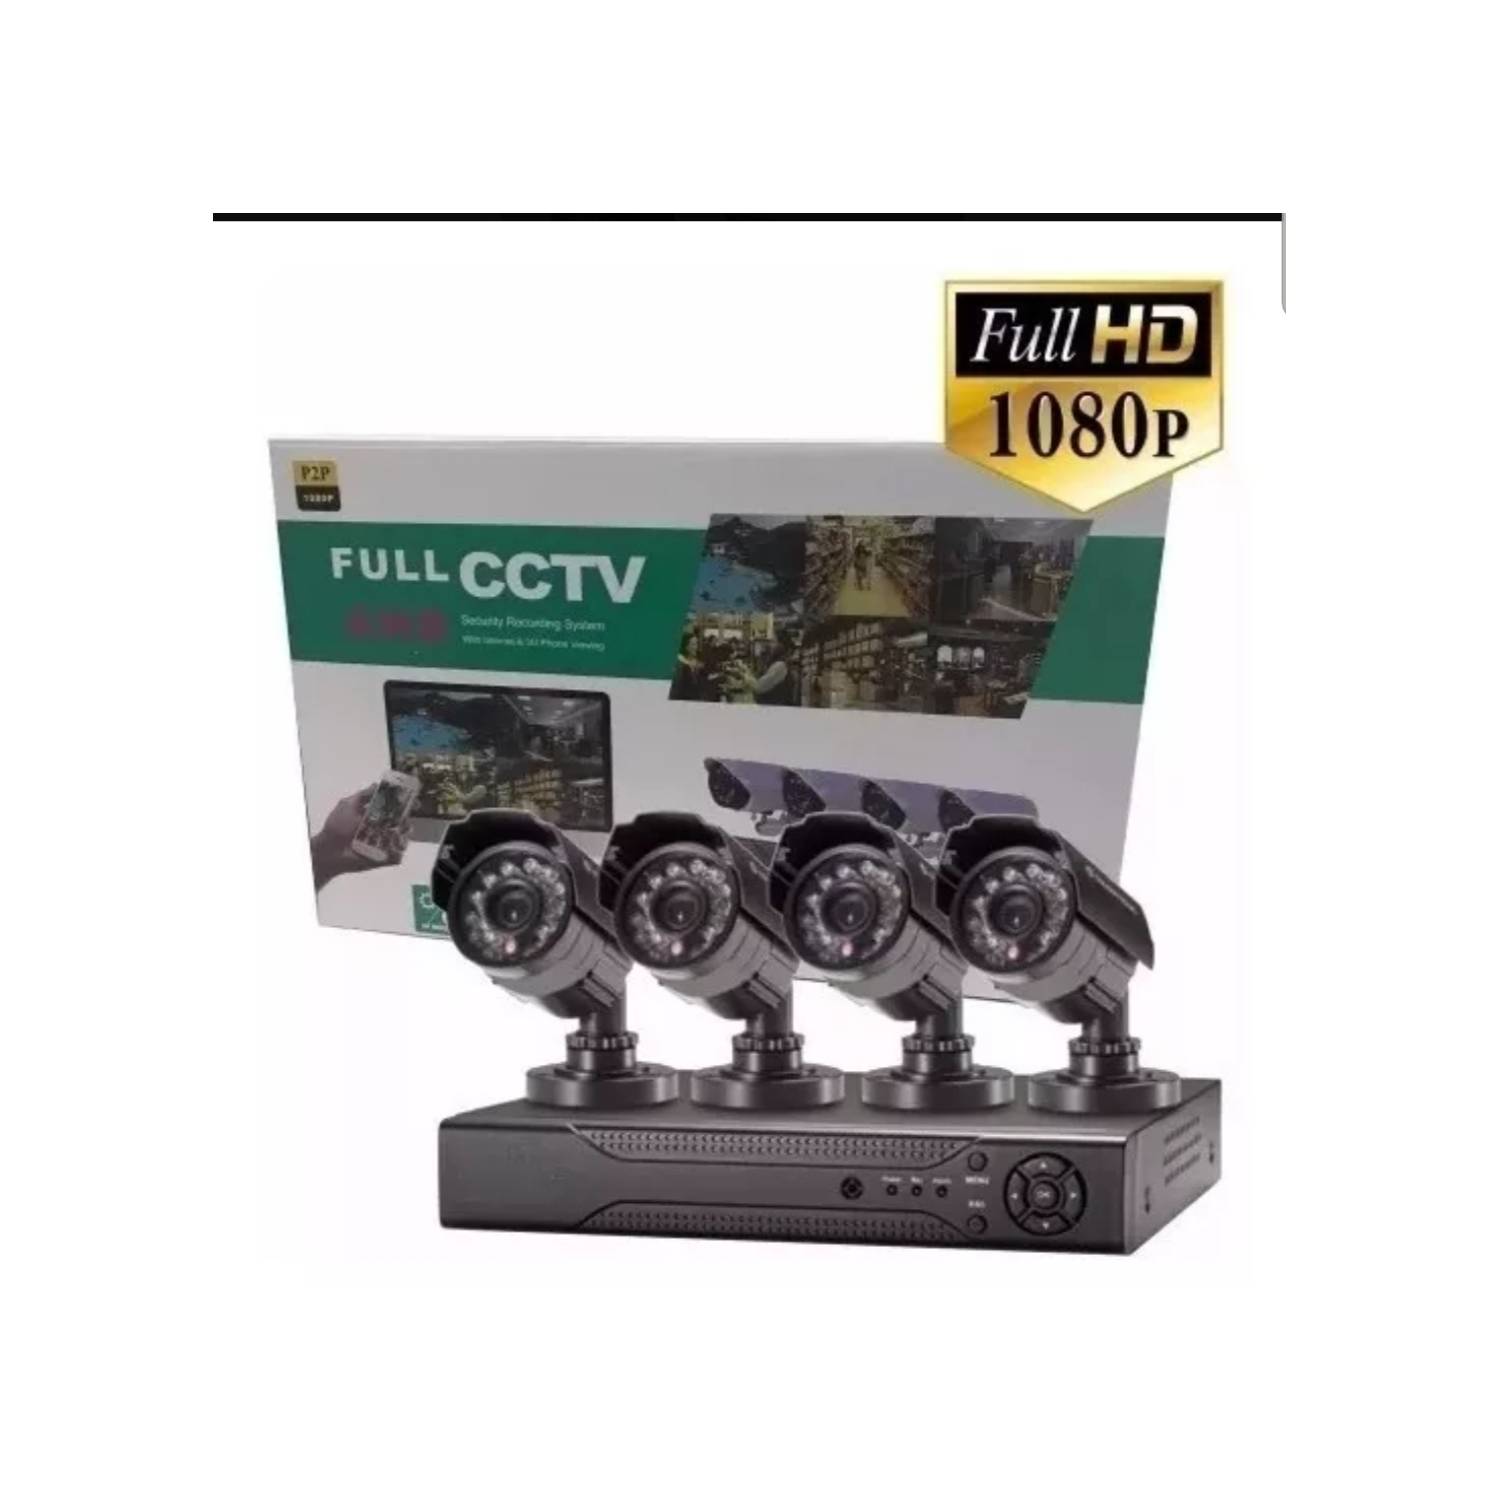 Kit Cctv 4 Canales Full HD 1080p P2p Seguridad. falabella.com